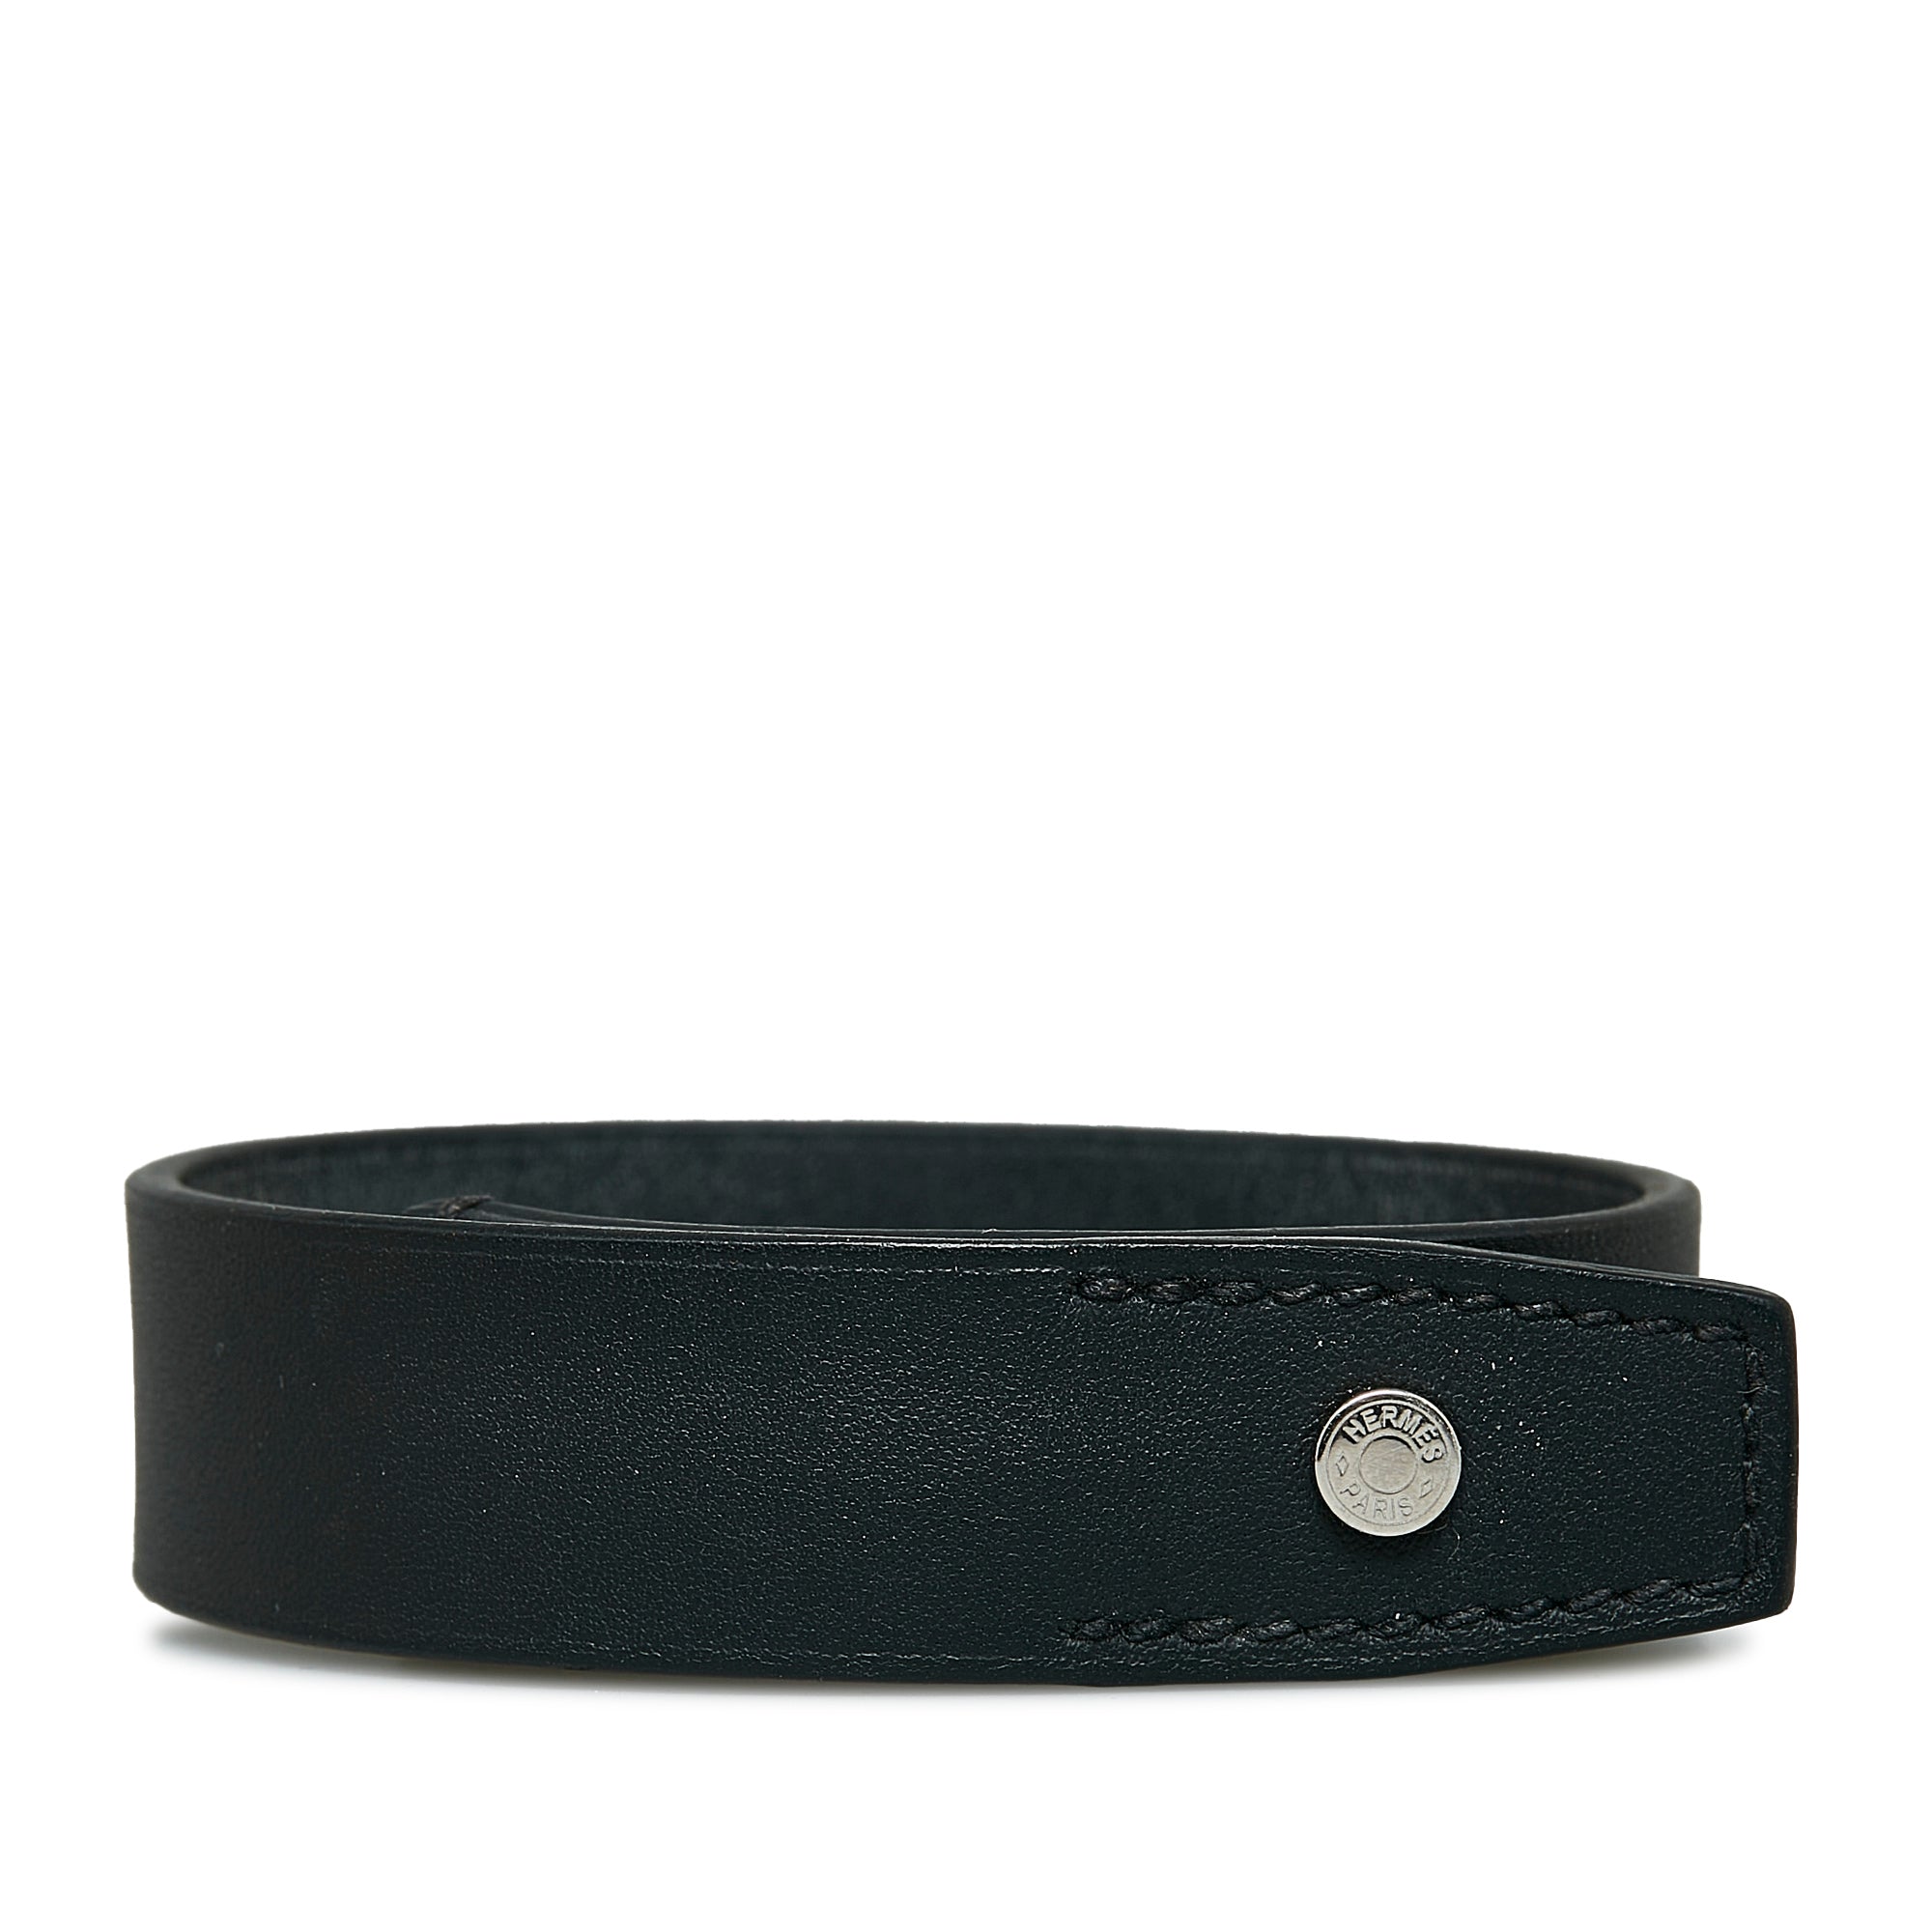 HERMES Leather Bracelet COLLIER DE CHIEN Collier de Chien Double Tour S  Size Black x Gold T Stamped 2 Rows aq9419